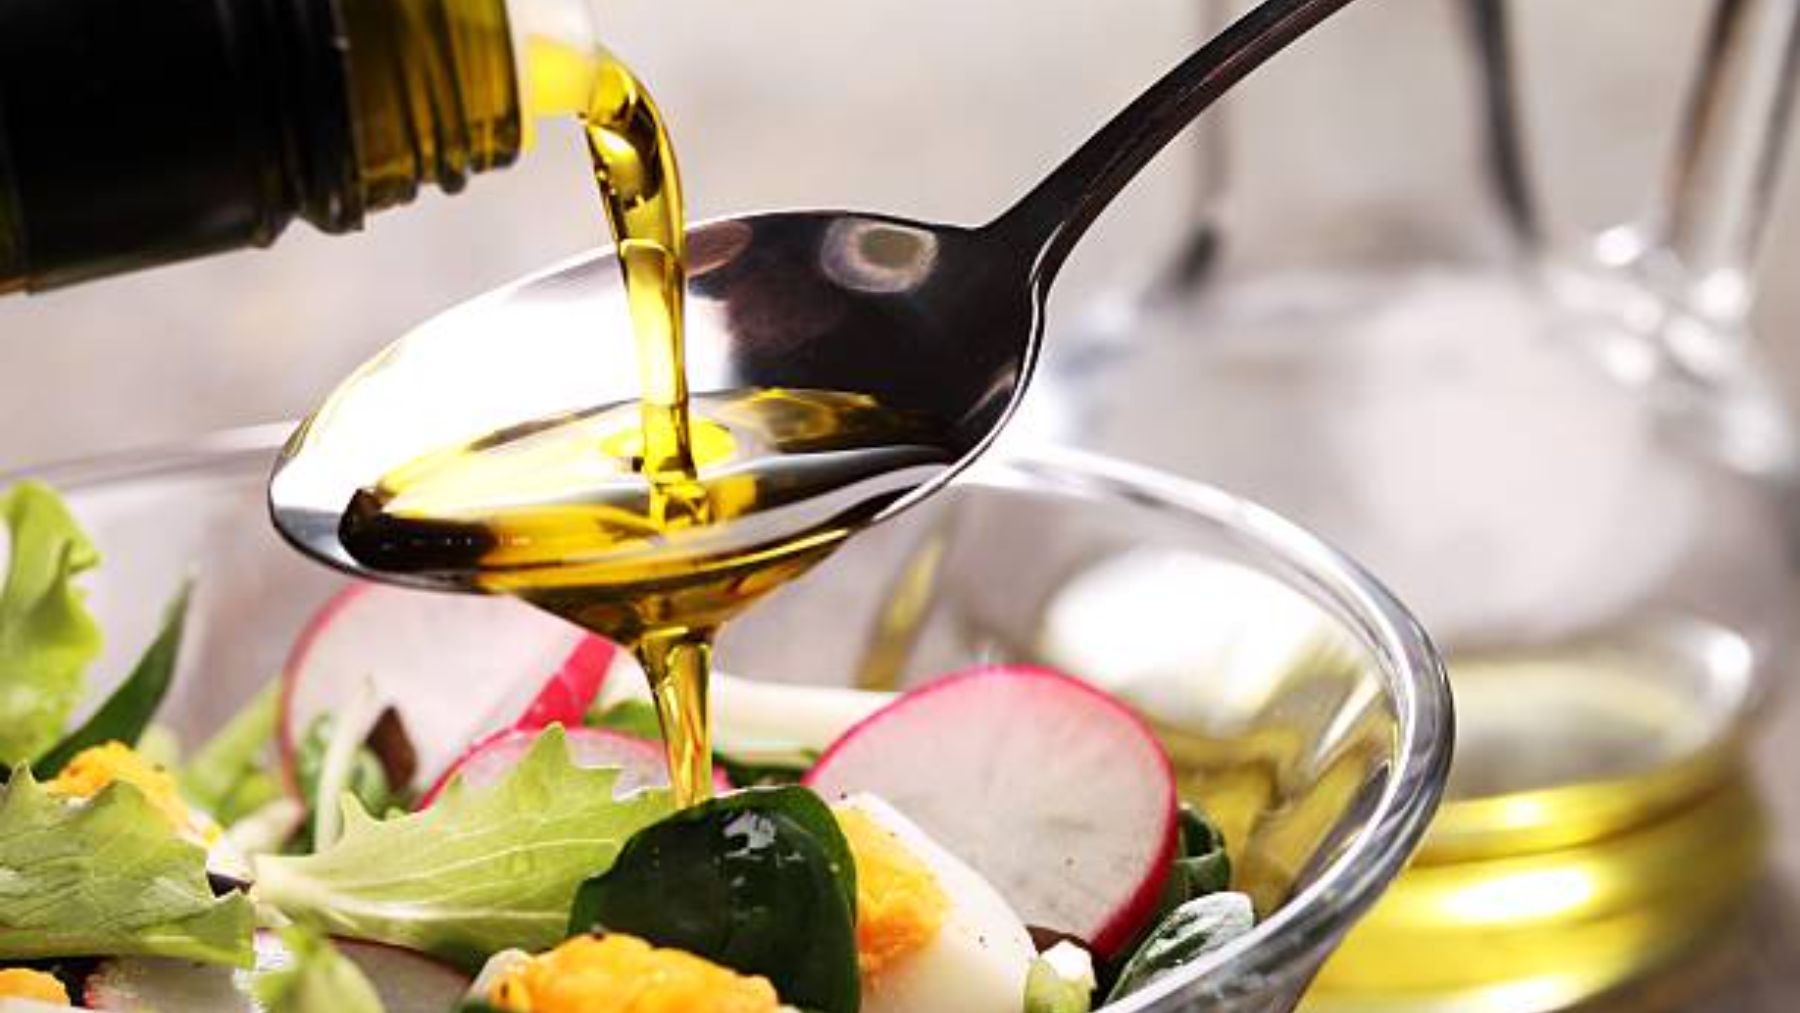 Cuchara con aceite de oliva sobre una ensalada.